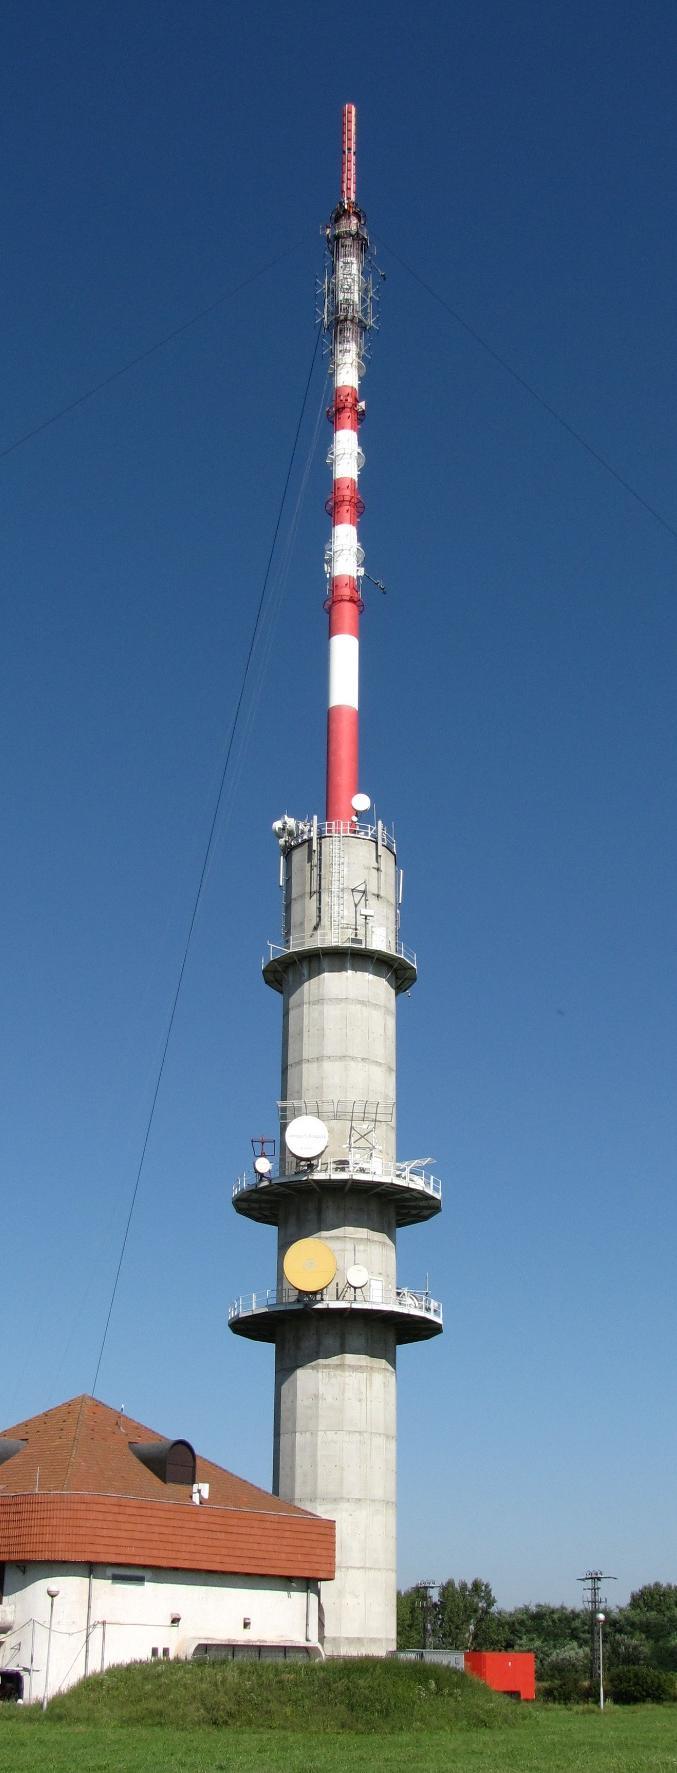 Az Országos Meteorológiai Szolgálat által üzemeltetett, de több intézmény méréseinek is helyet adó mérőhely az Antenna Hungária Rt. adótornya (4.75.